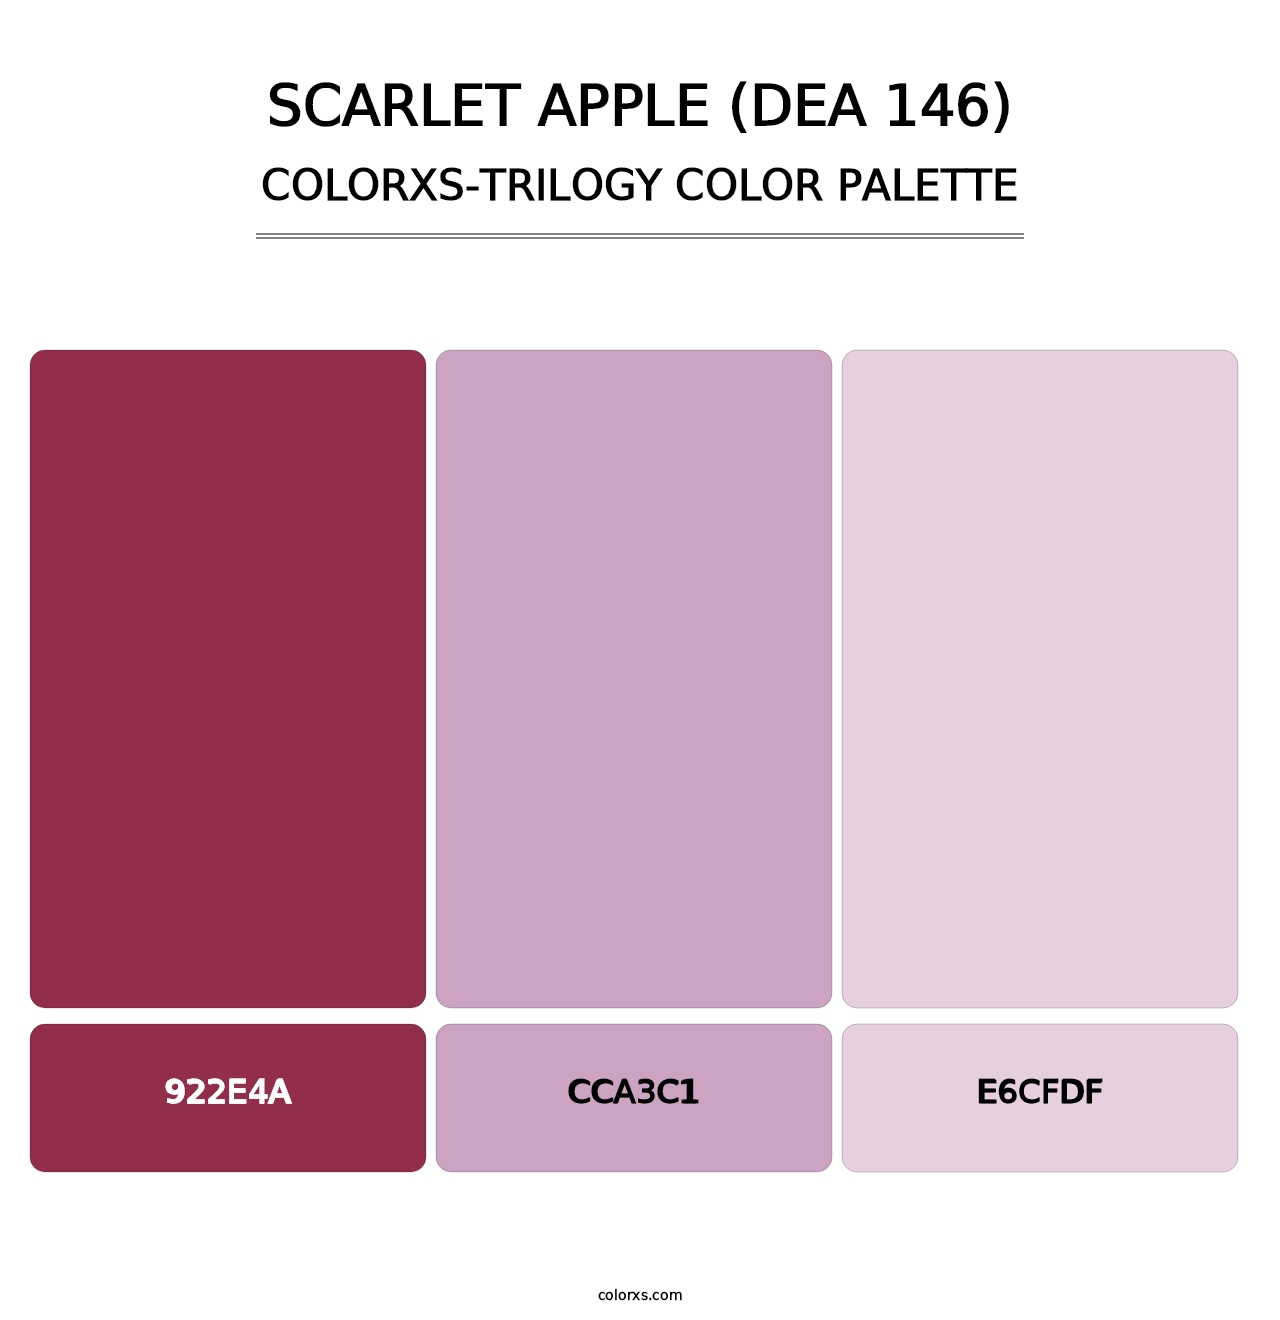 Scarlet Apple (DEA 146) - Colorxs Trilogy Palette